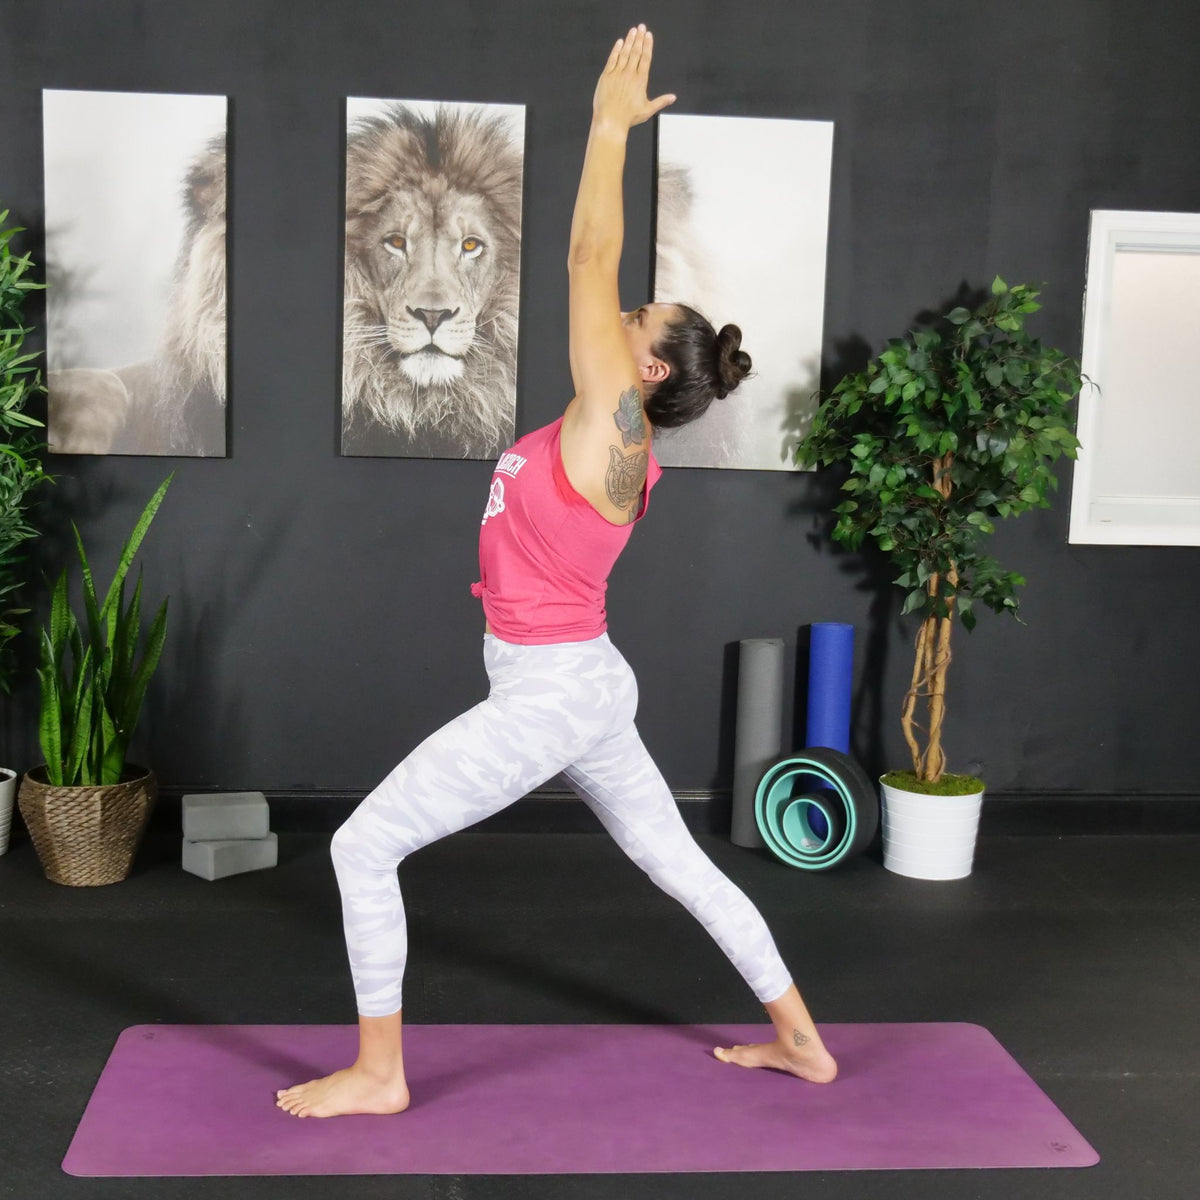 Easy Yoga Flow for Beginners - Digital/DVD